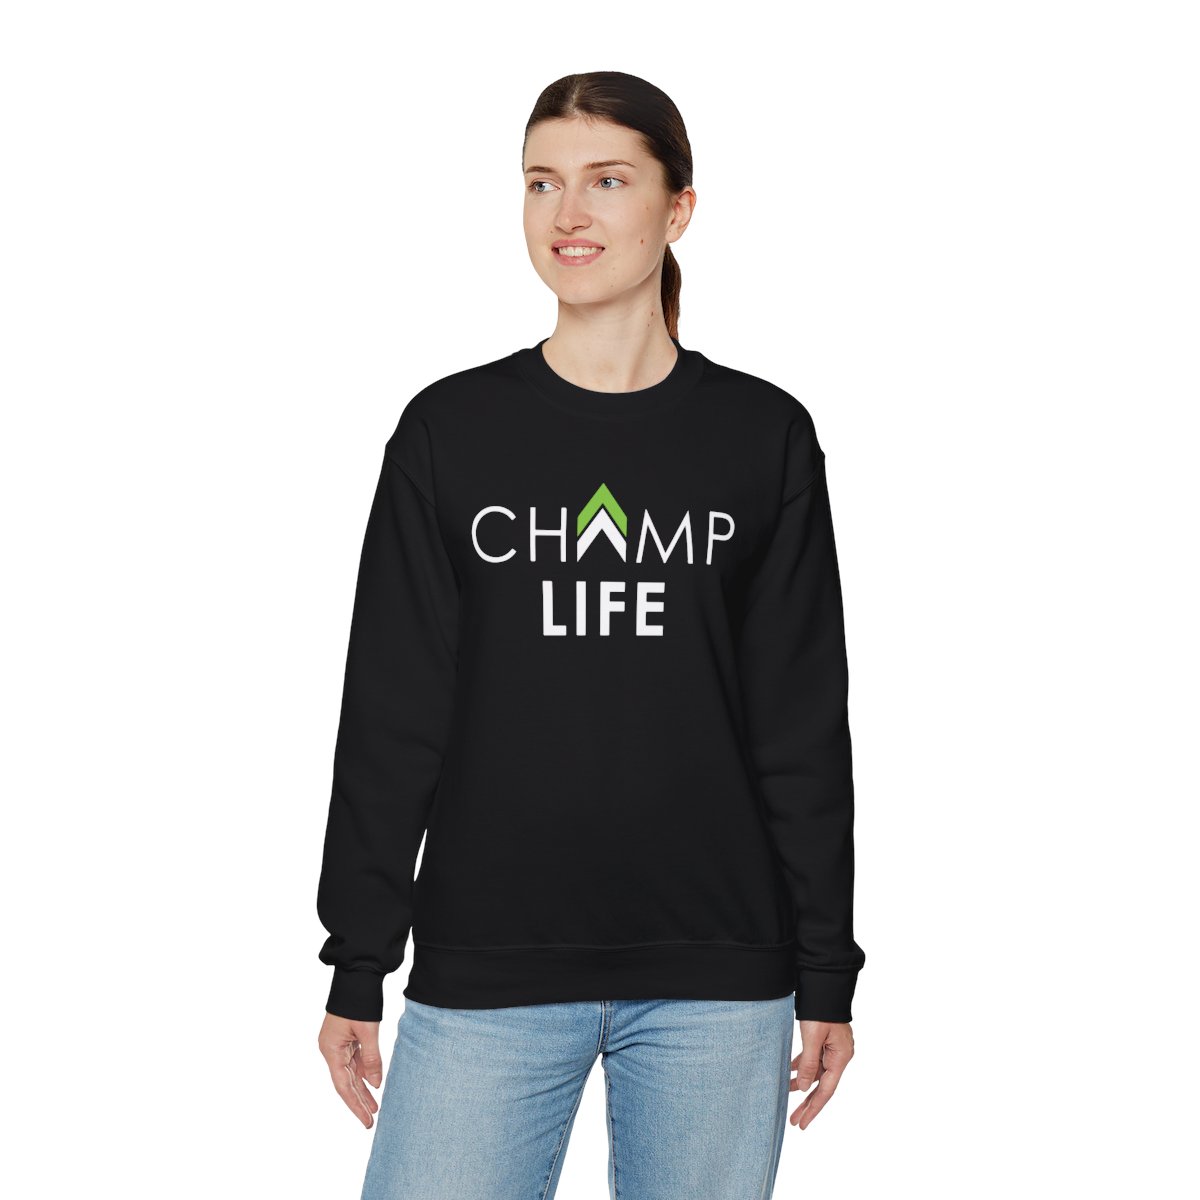 Champ Life Unisex Crewneck Sweatshirt - Black product thumbnail image